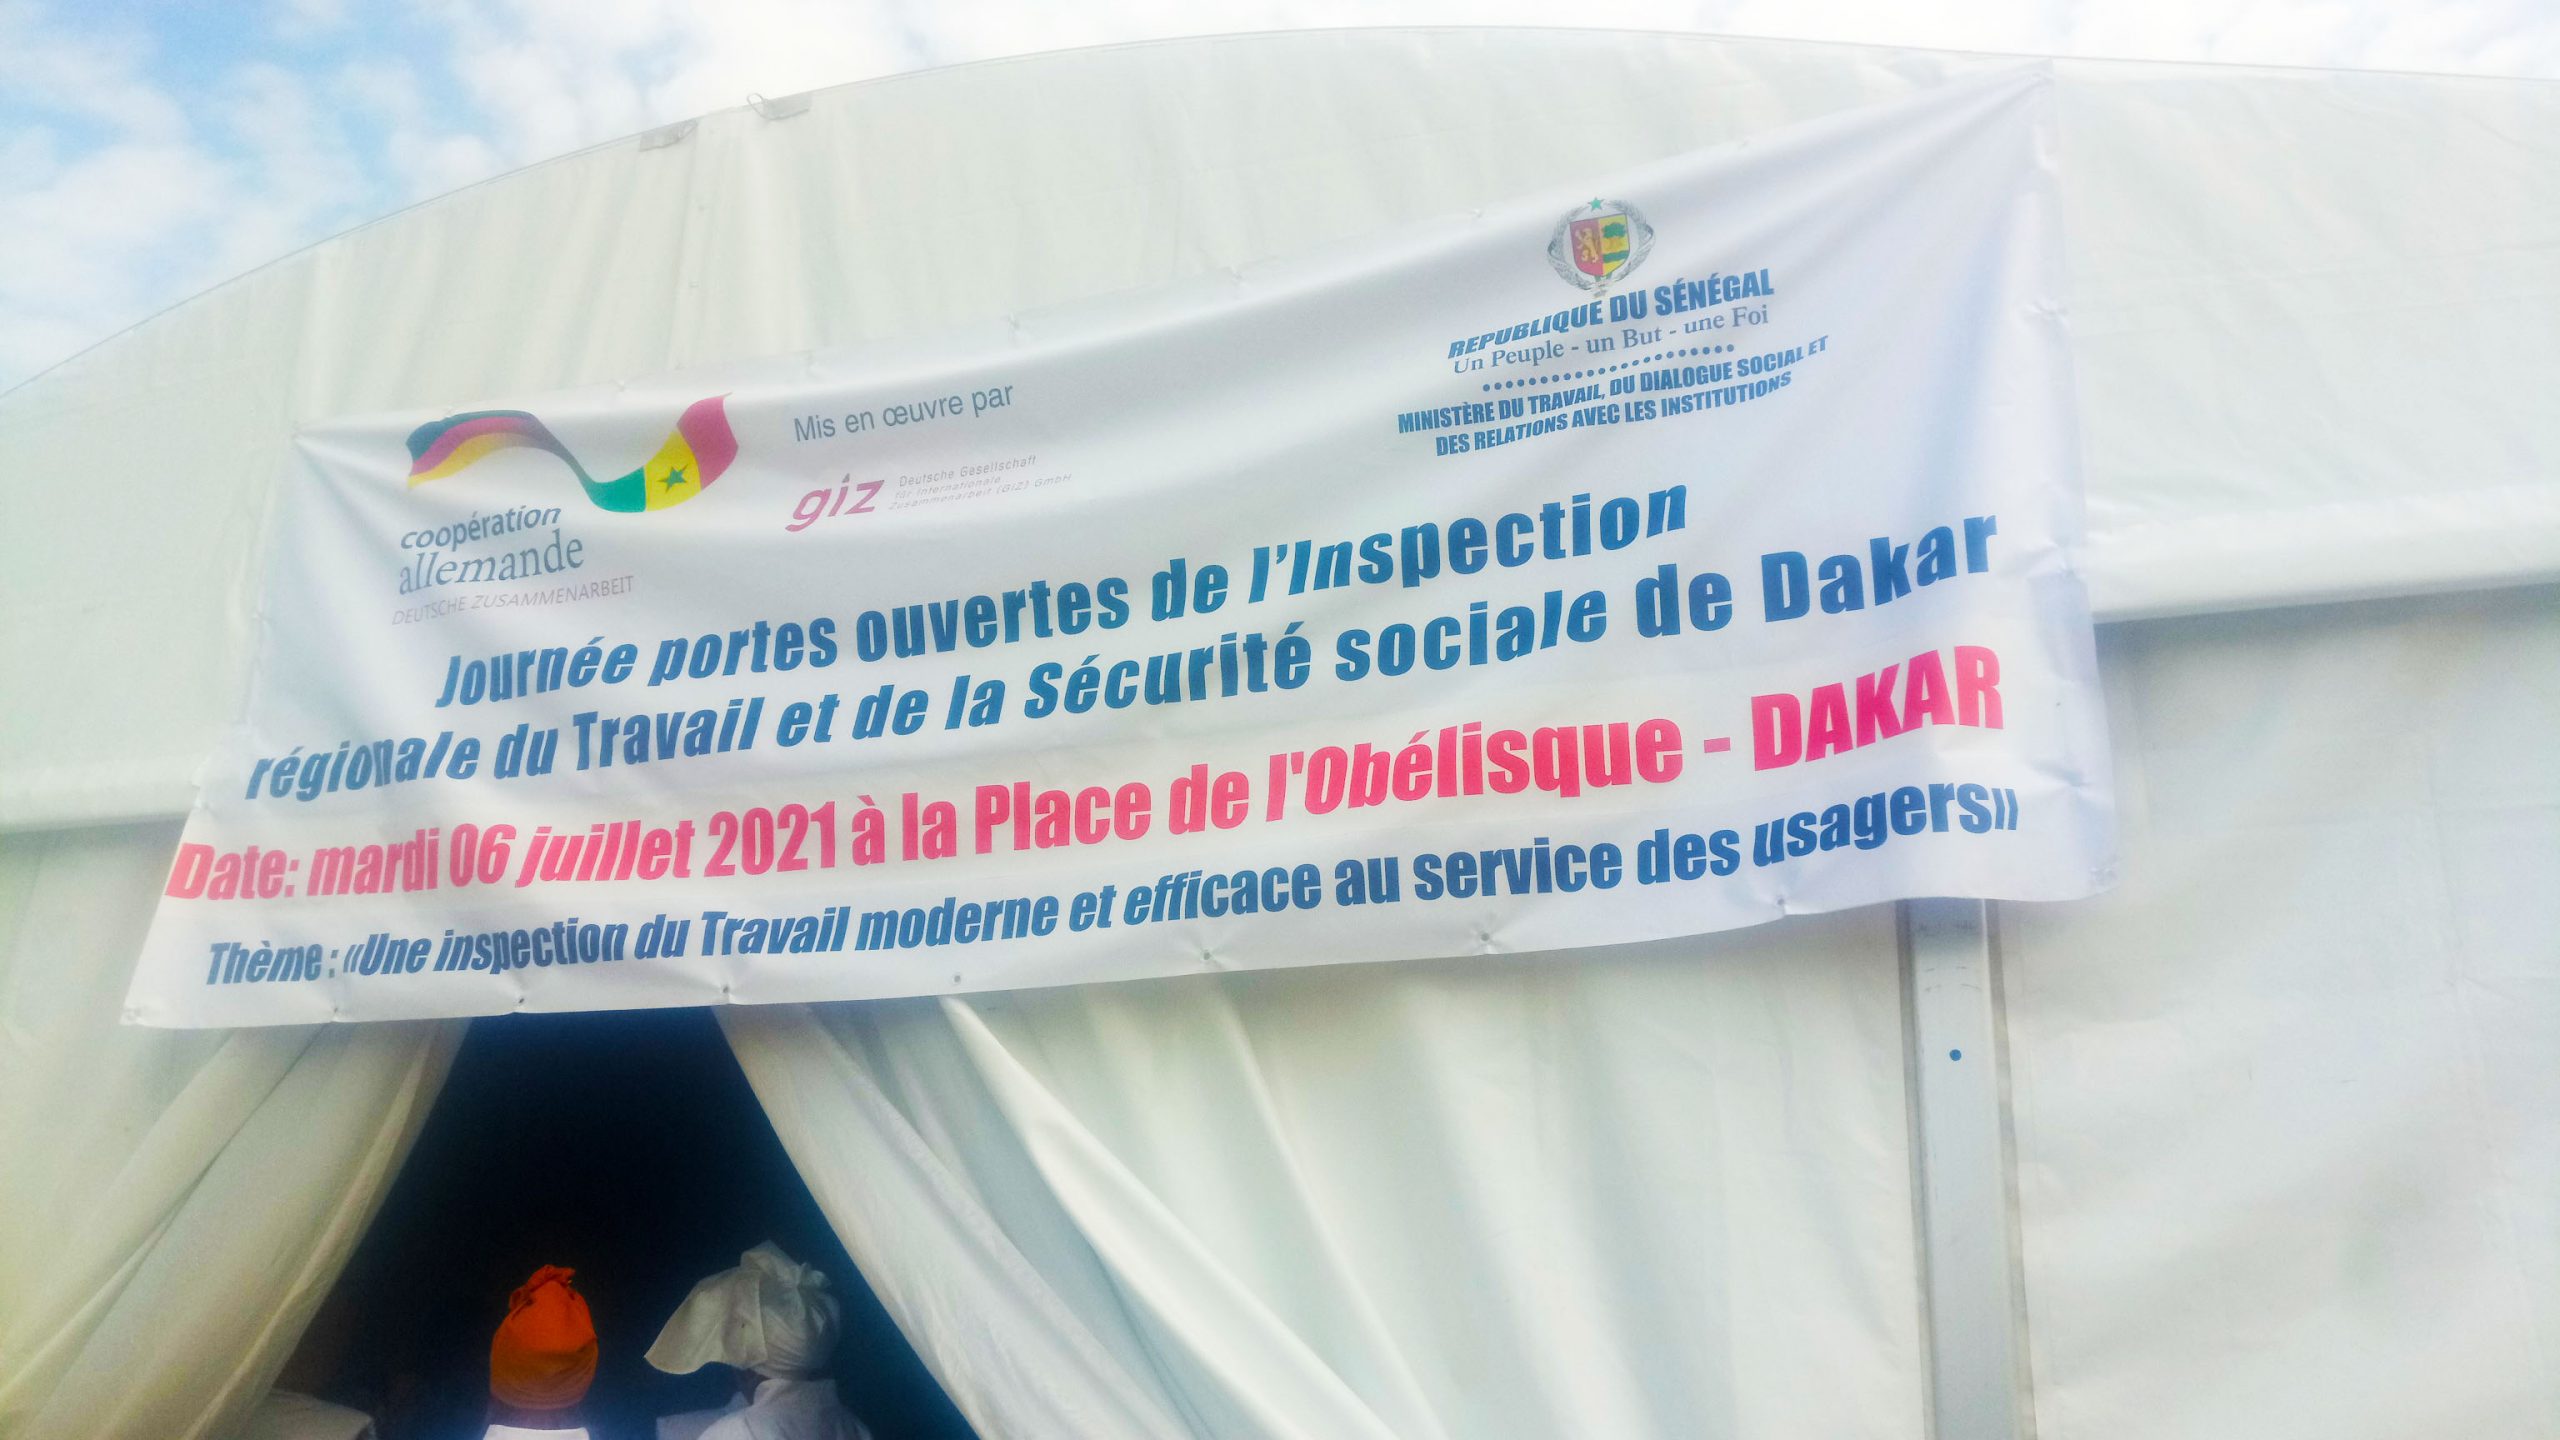 travail et sécurité sociale : l’IRTSS de Dakar pour l’actualisation et l’efficience de ses services